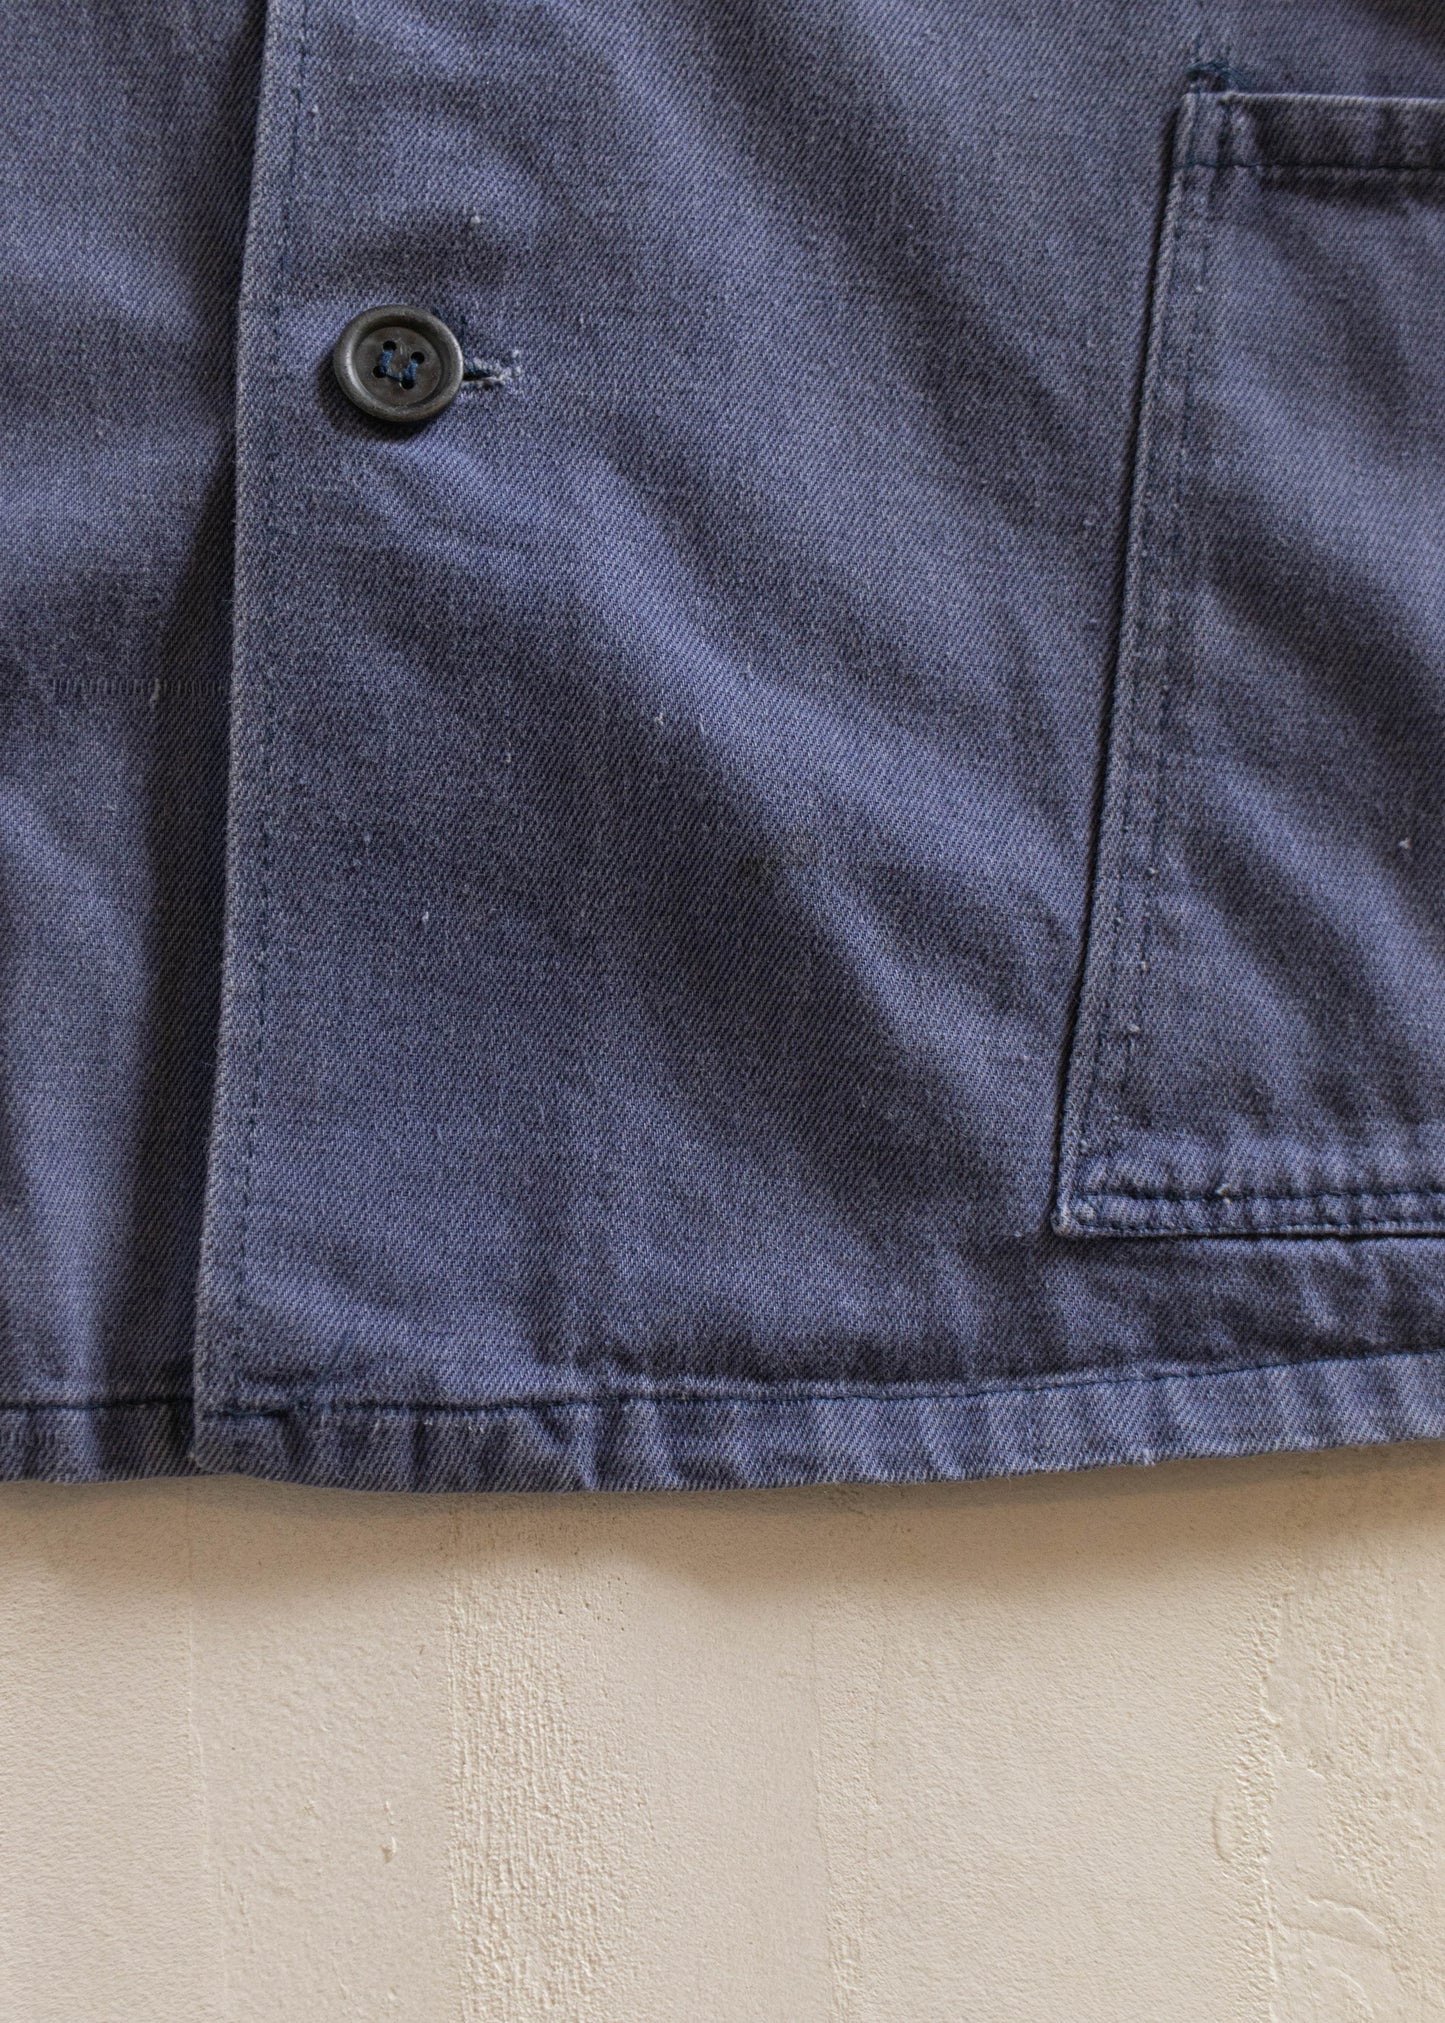 1980s Rakon French Workwear Chore Jacket Size S/M